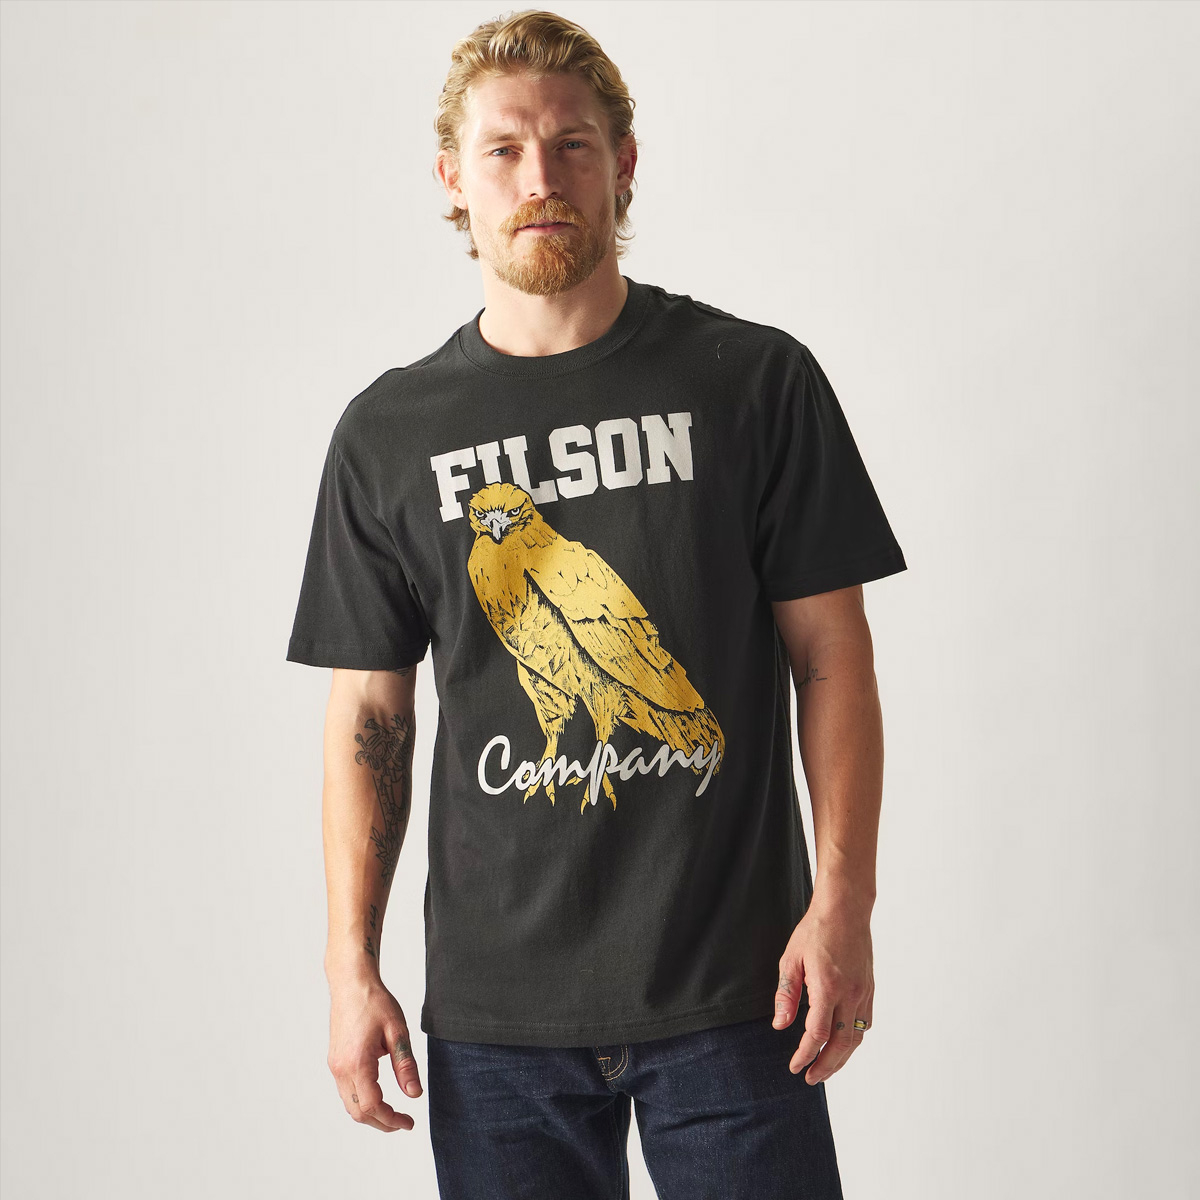 Filson Pioneer Graphic T-Shirt Black/Bird of Grey, Hergestellt aus 100% Baumwolle mit Textur, Struktur und angenehmem Tragegefühl